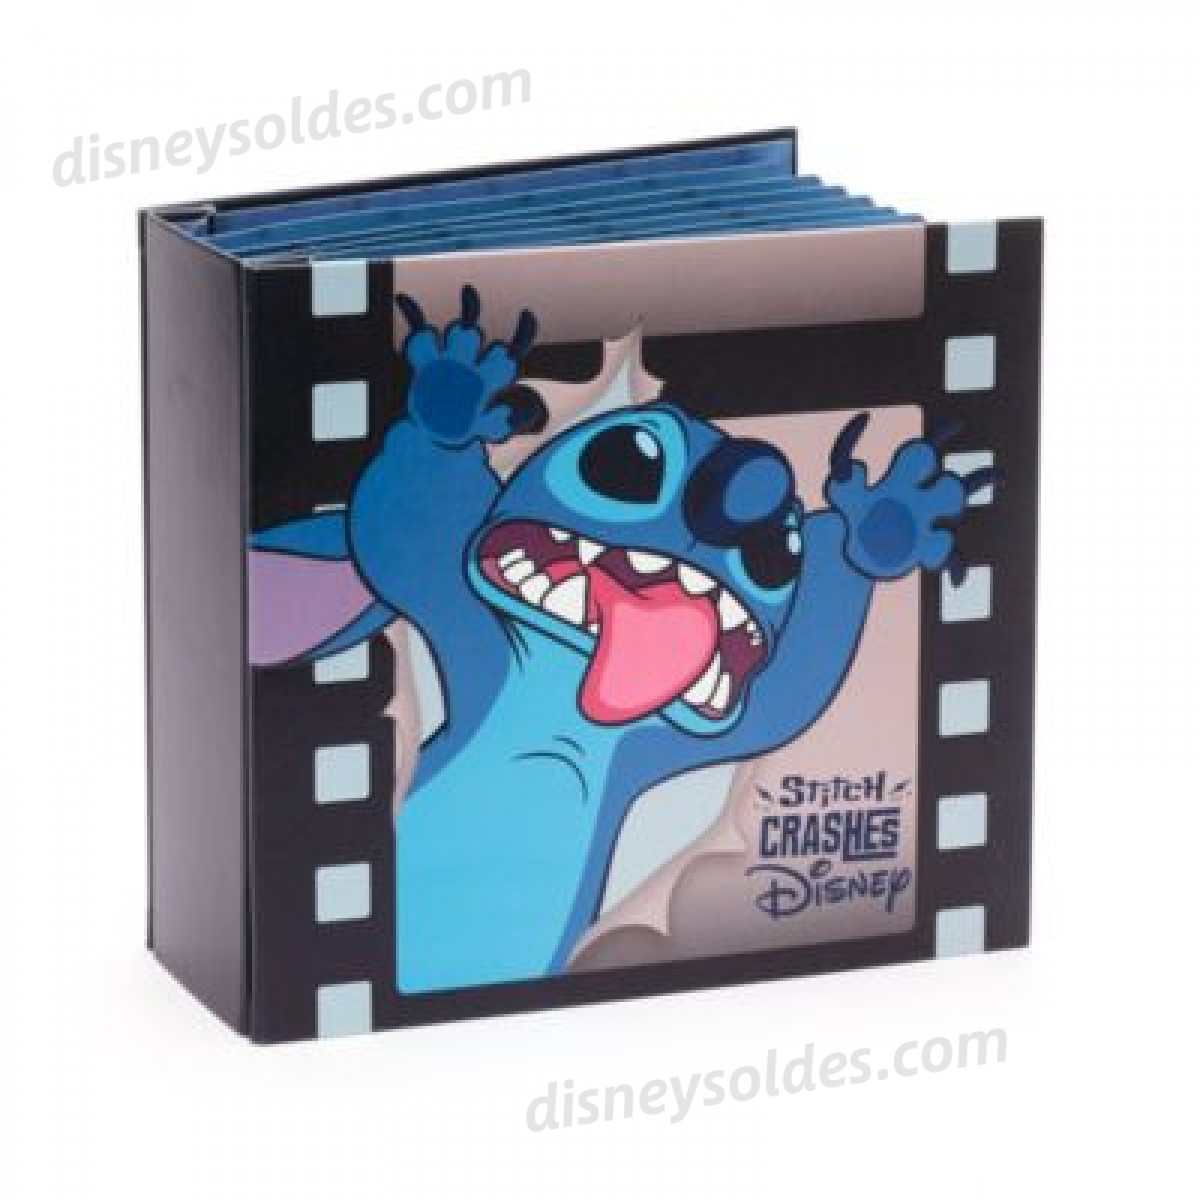 Disney Boutique Livre de collection de pin's Stitch Crashes Disney Nouveau  style